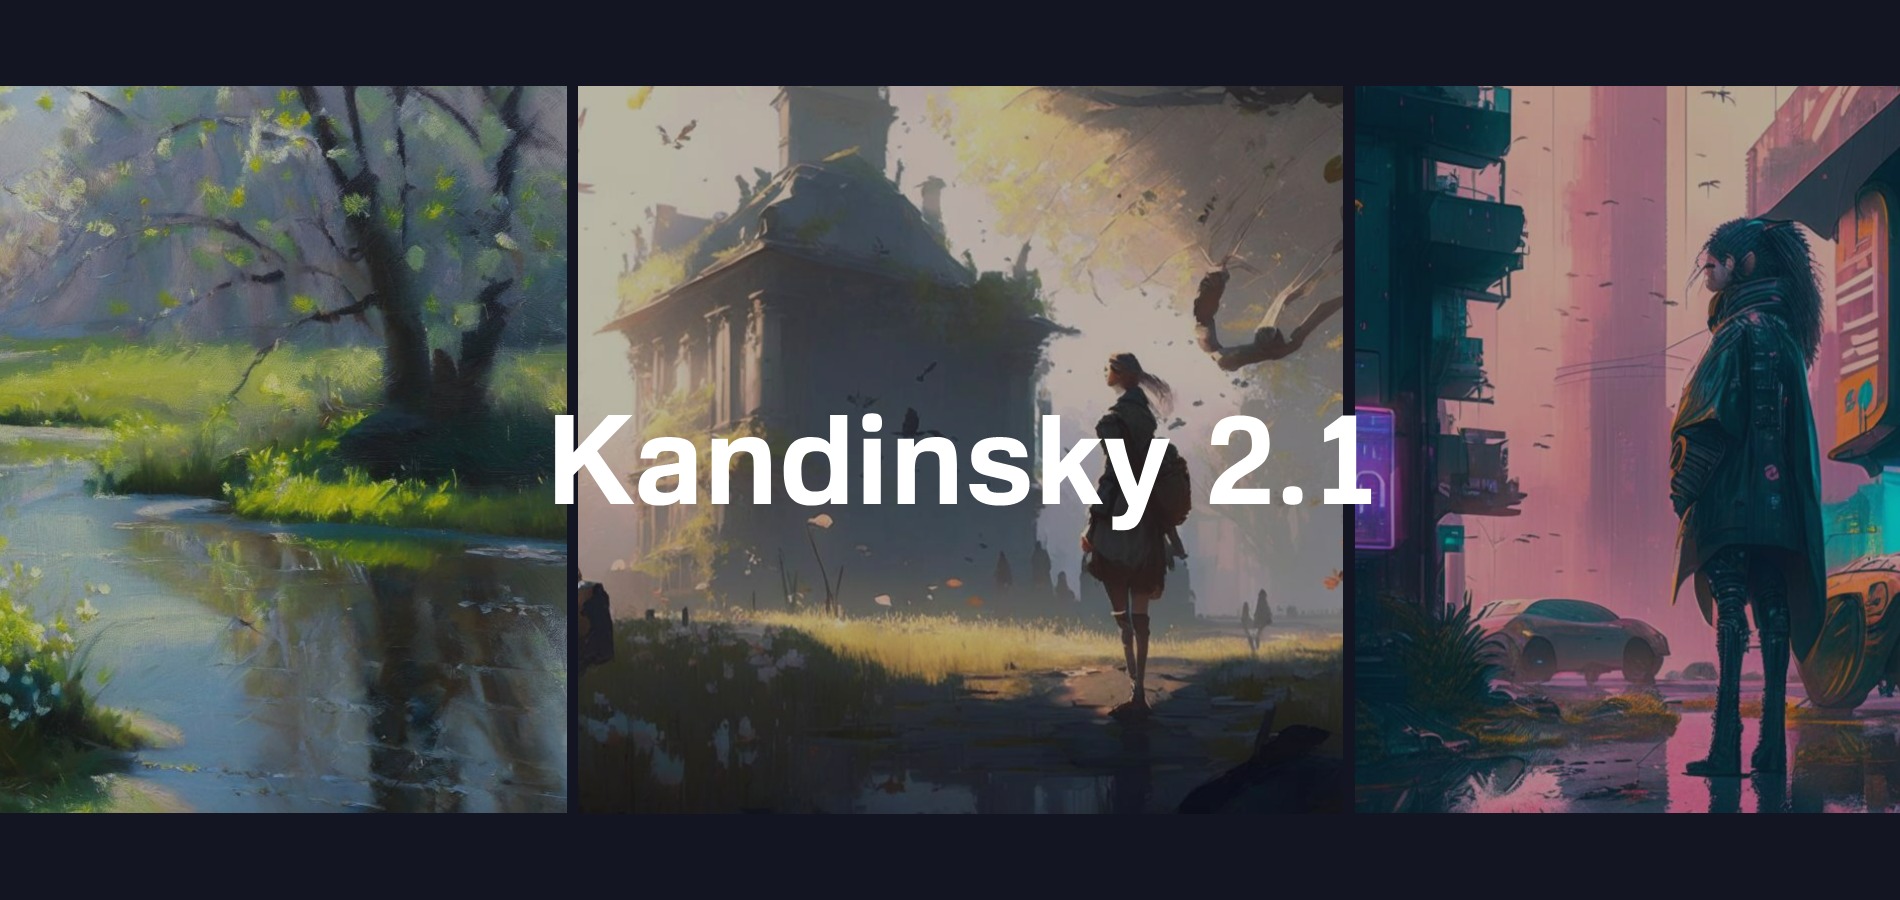 Сбер запустил нейросеть Kandinsky 2.1, создающую изображения по описанию